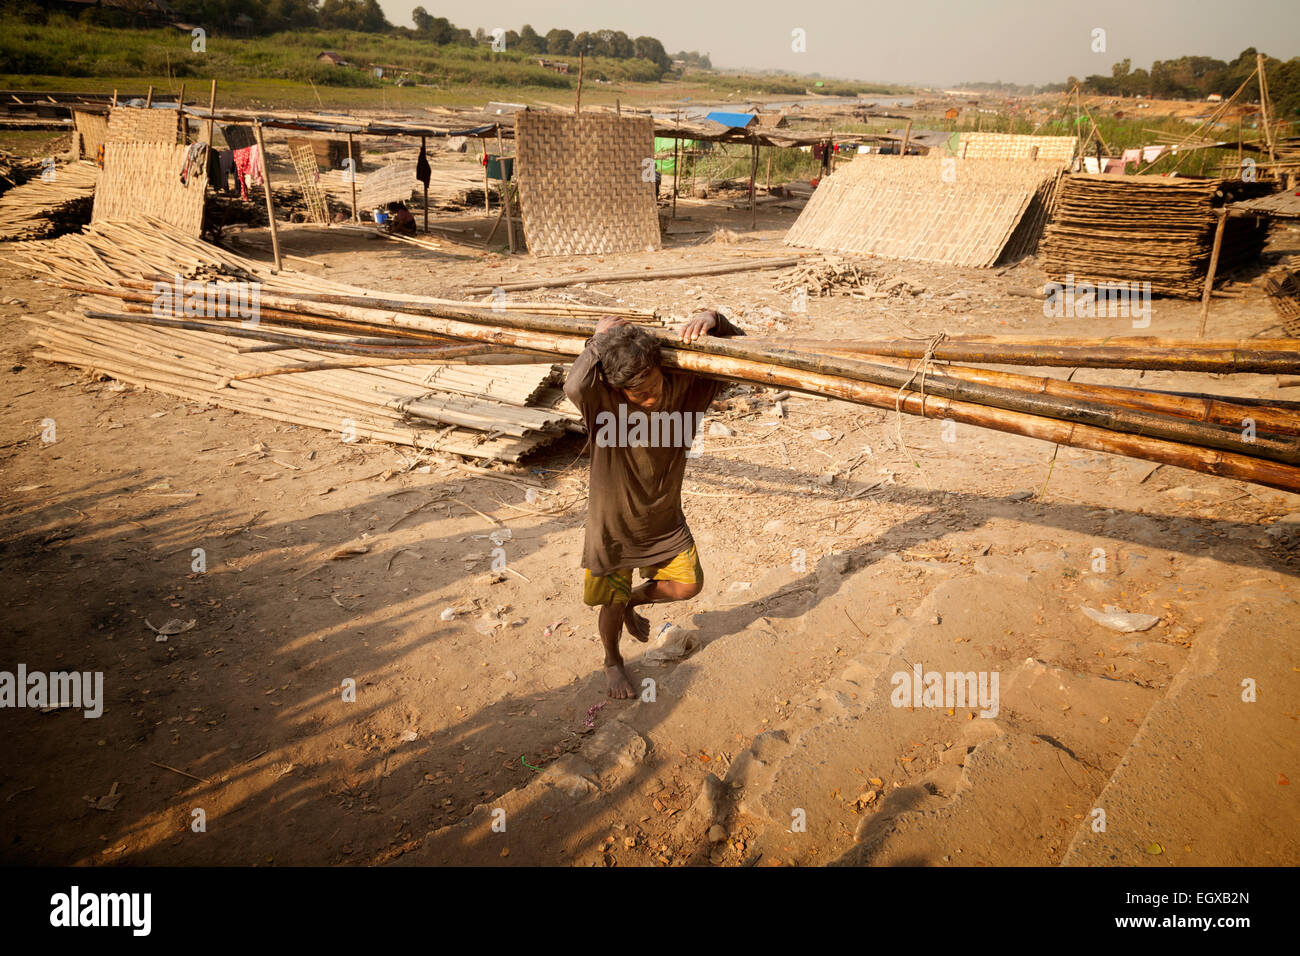 Handarbeit Asien; Ein Arbeiter, der Bambusstangen an den Ufern des Irrawaddy-Flusses ( Ayeyarwady River ), Mandalay, Myanmar ( burma ) Asien trägt Stockfoto